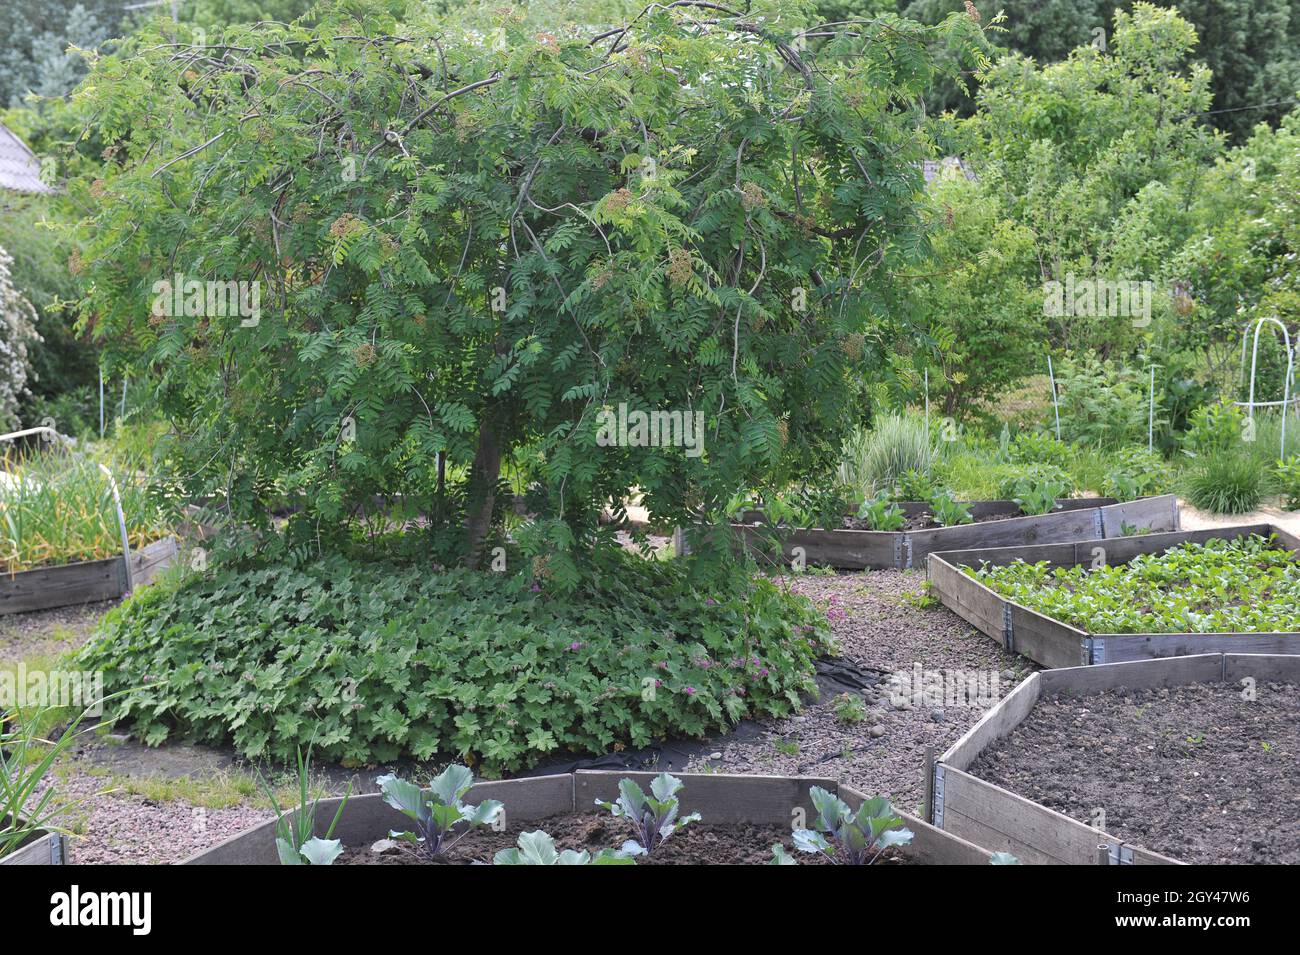 La cenere di montagna europea piangente (Sorbus aucuparia Pendula) cresce in mezzo ad un orto con letti rialzati in un giardino nel mese di maggio Foto Stock